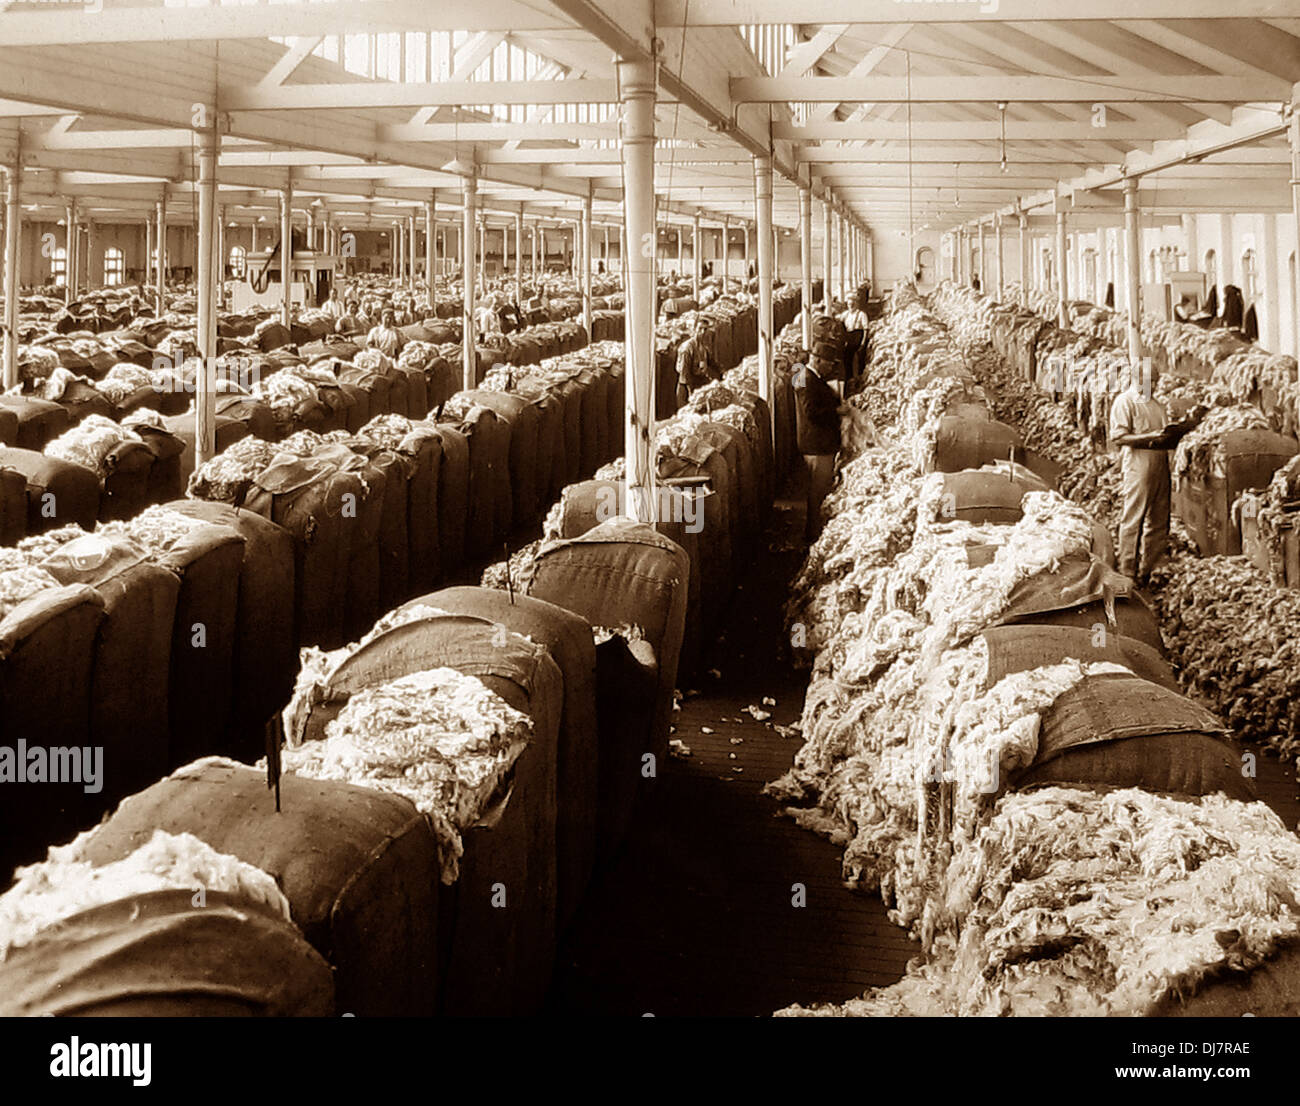 Showroom de laine de la Nouvelle-Galles du Sud Australie Sydney NSW 1920 probablement Banque D'Images